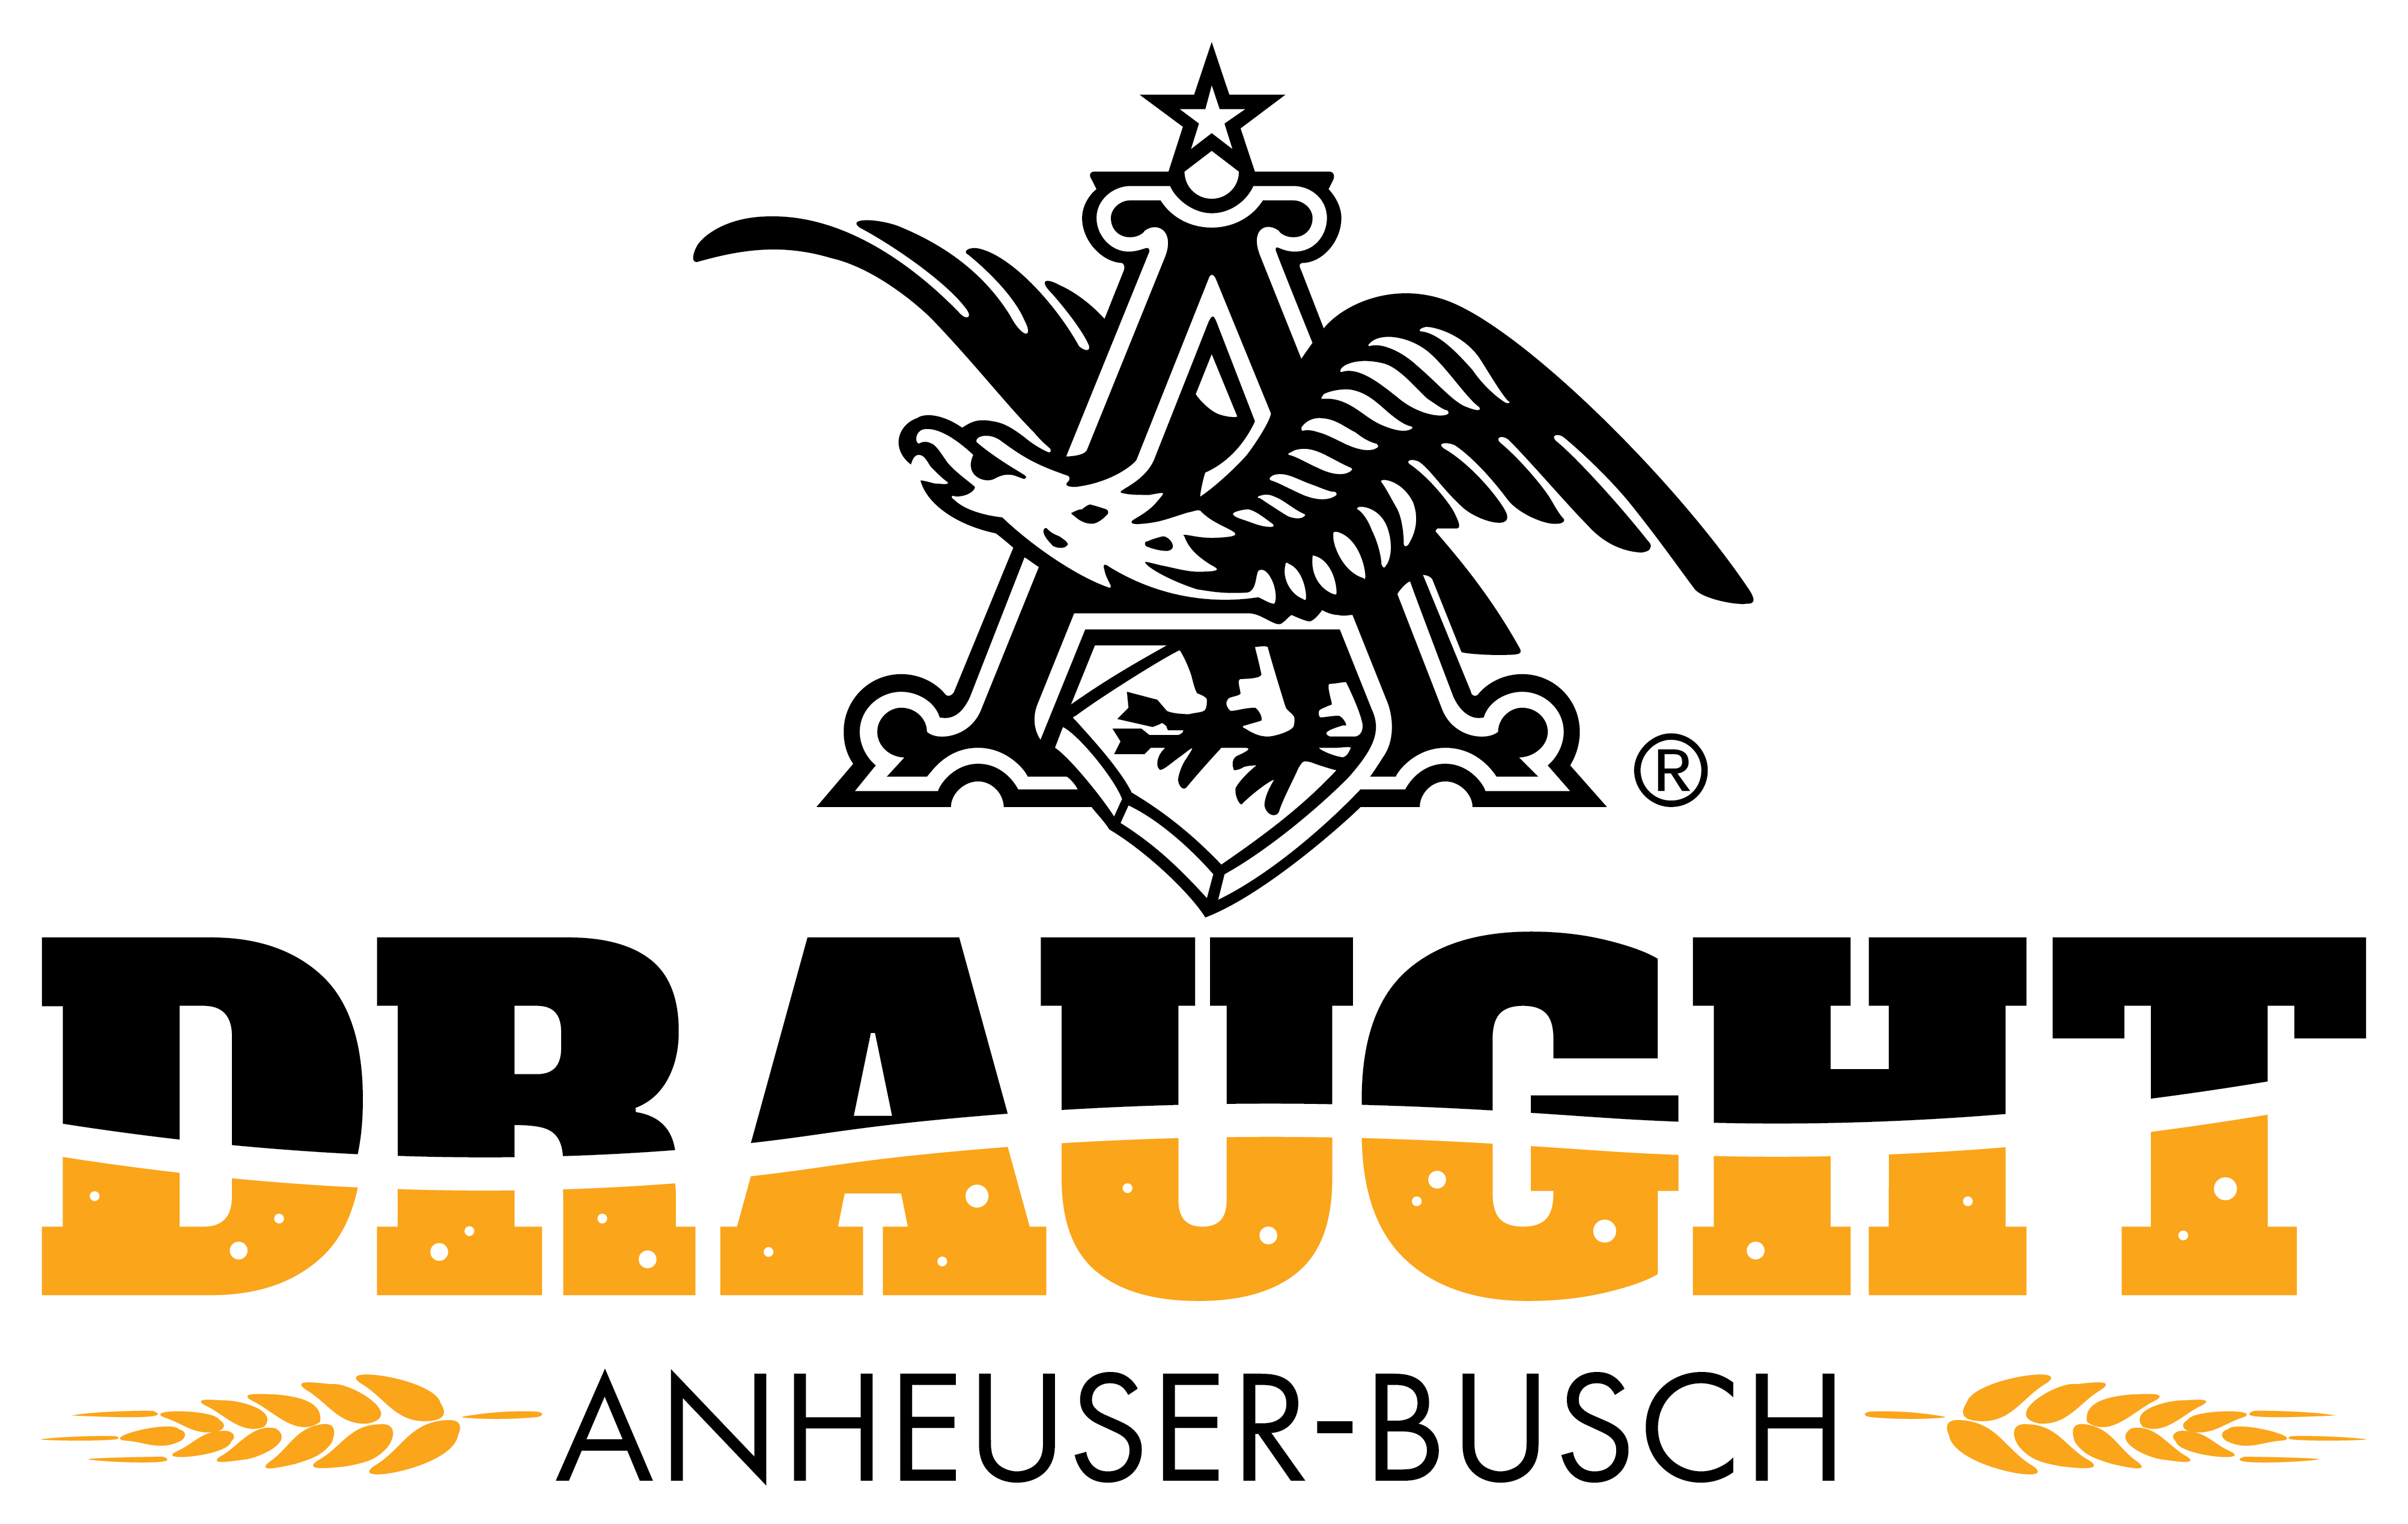 Anheuser-Busch Draught